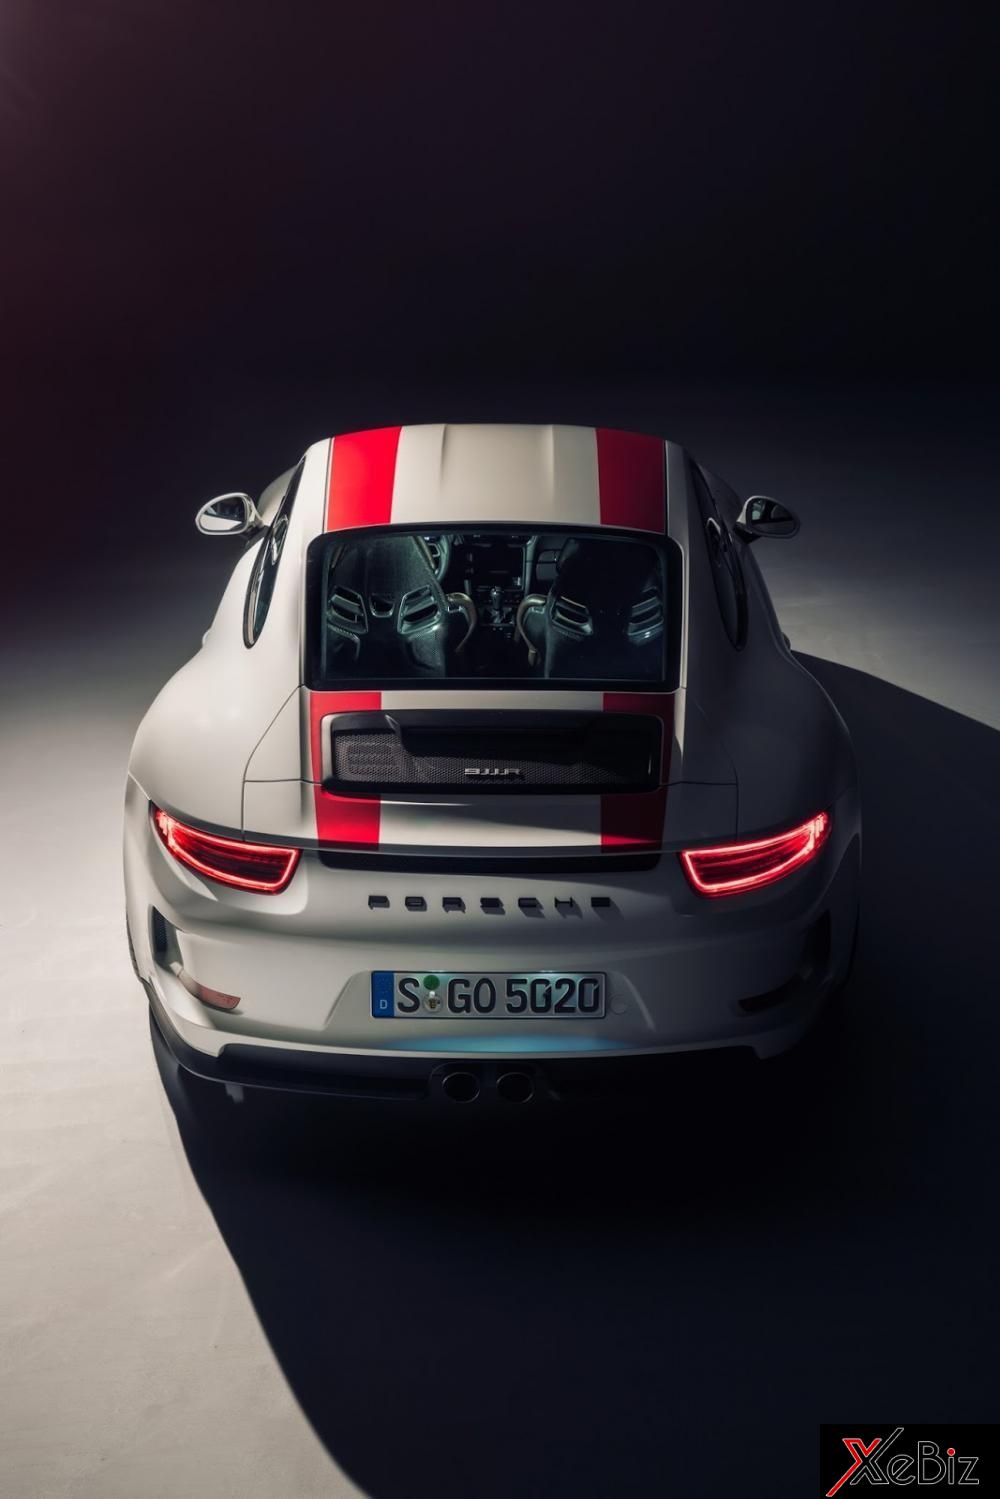 Porsche 911 chuẩn bị chào đón thêm một “chiến binh” mới 04